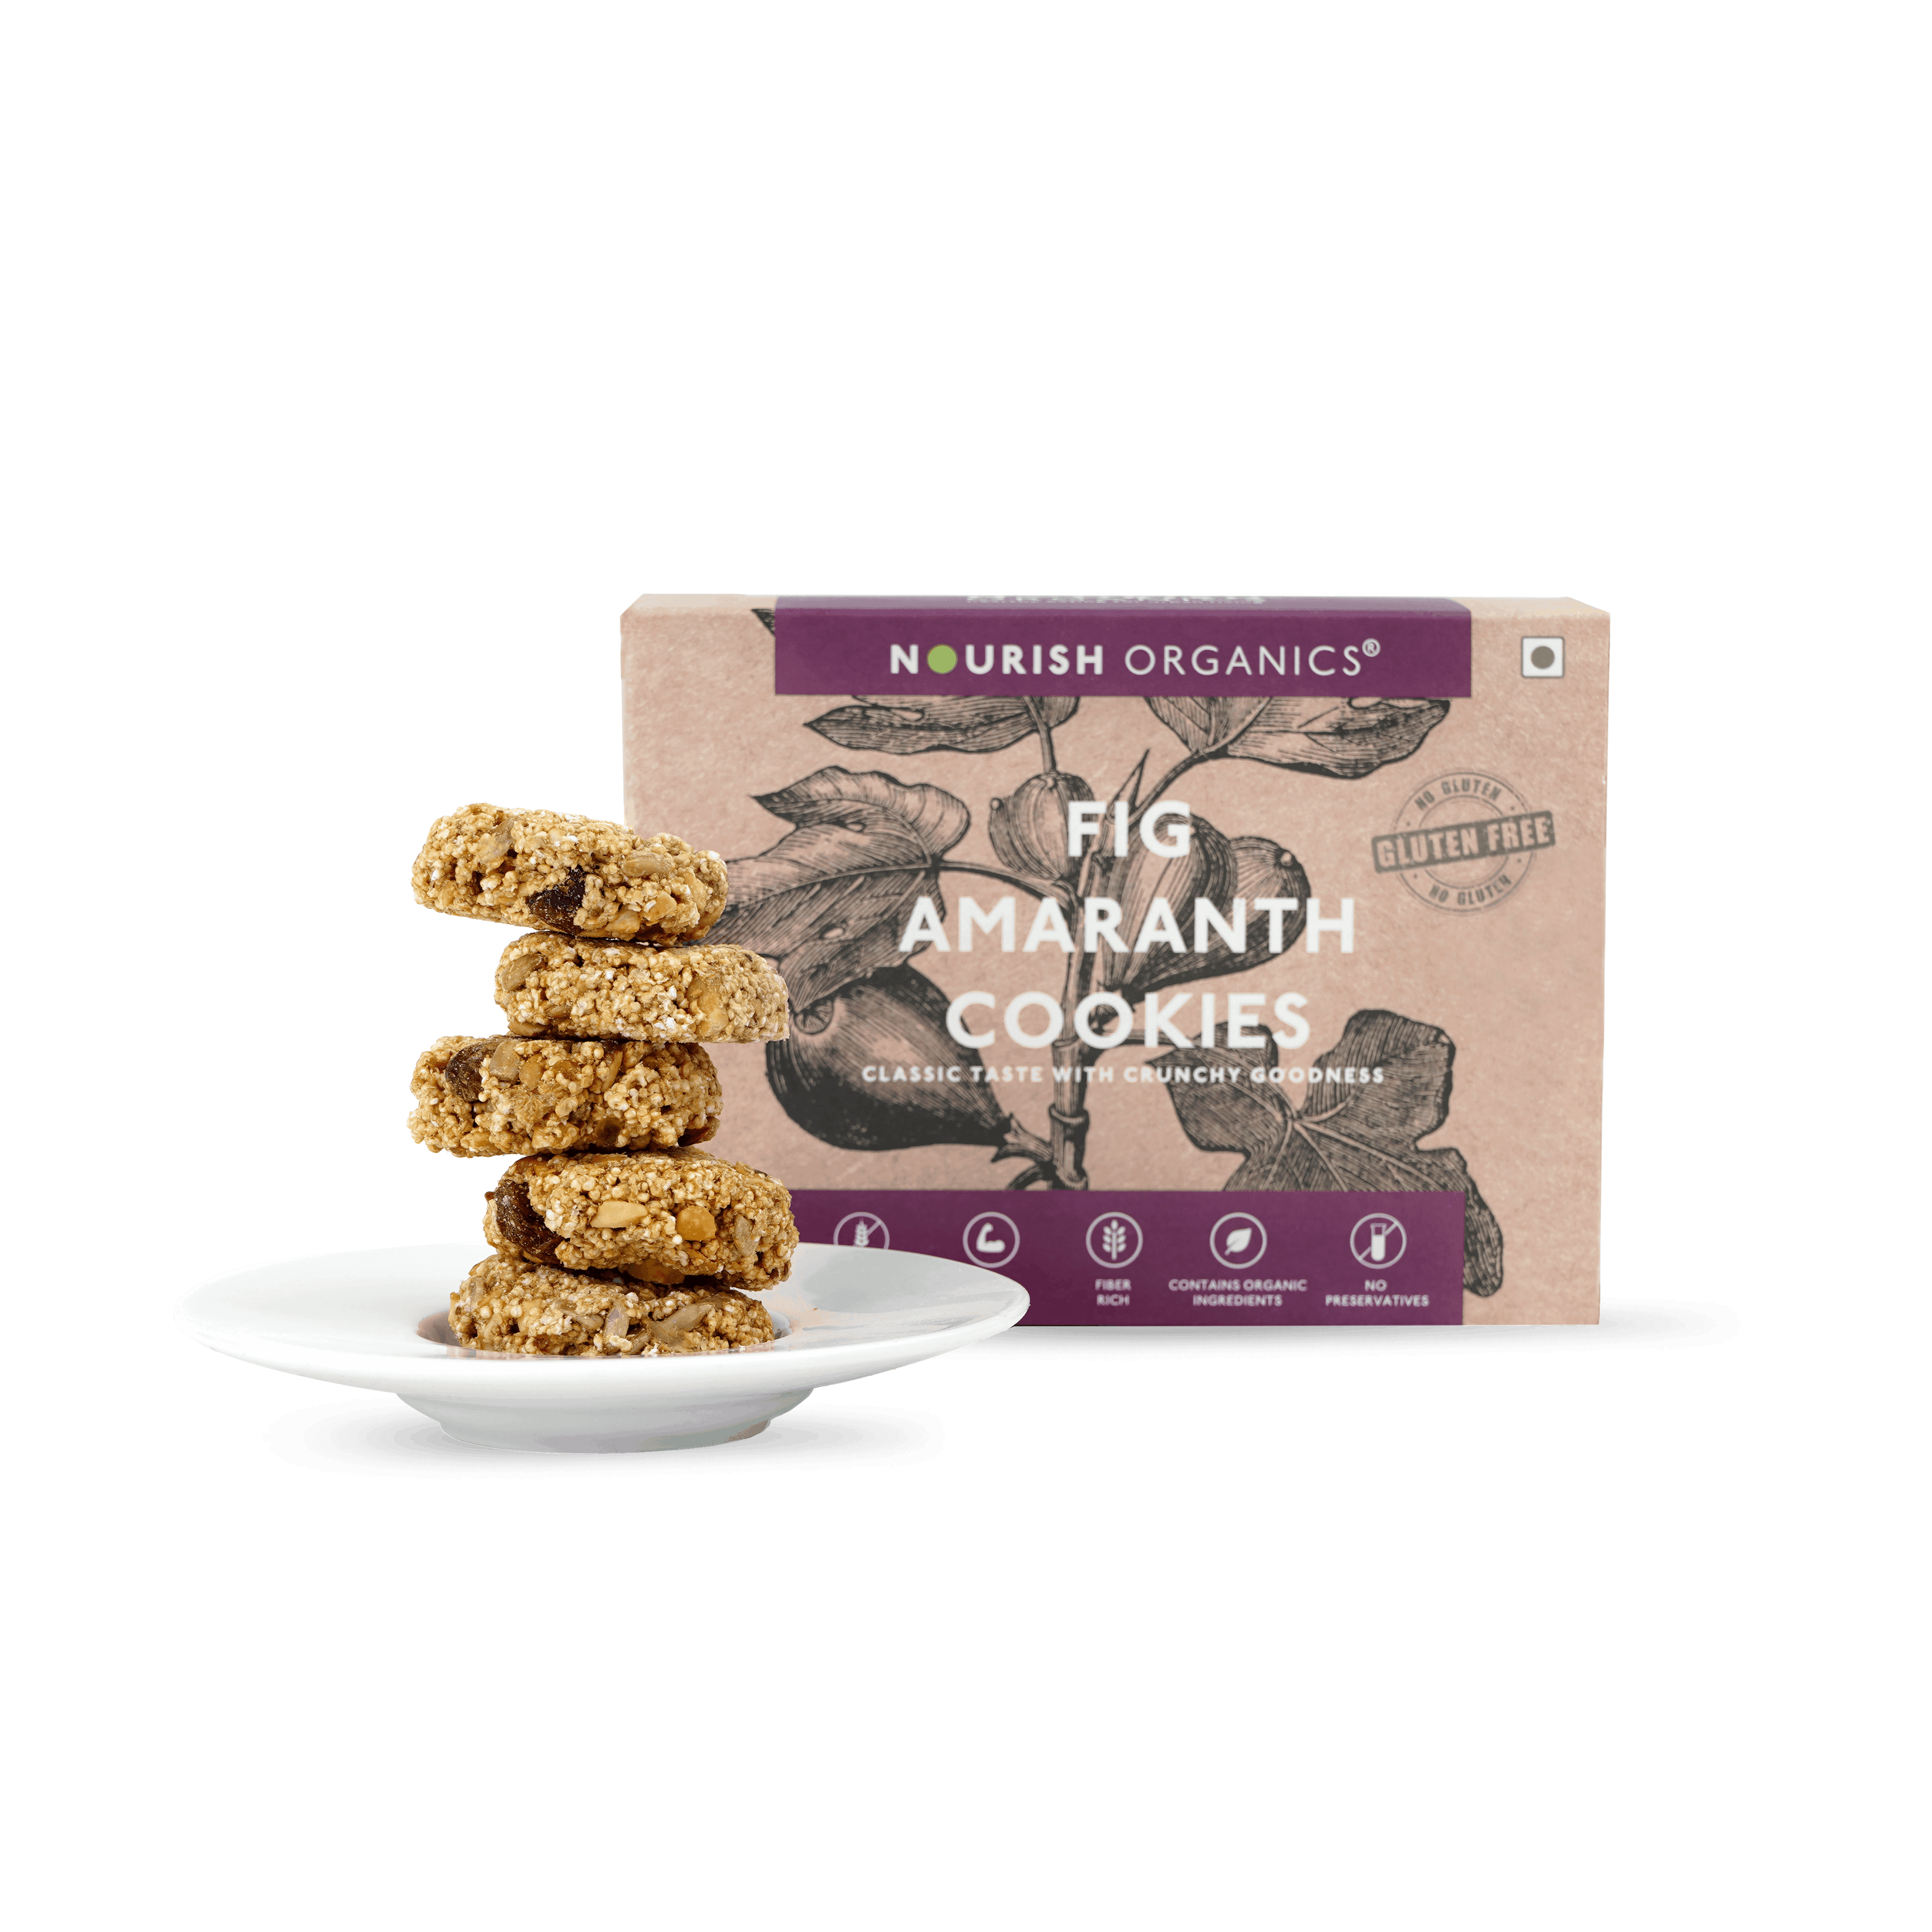 Fig Amaranth Cookies - Gluten-Free